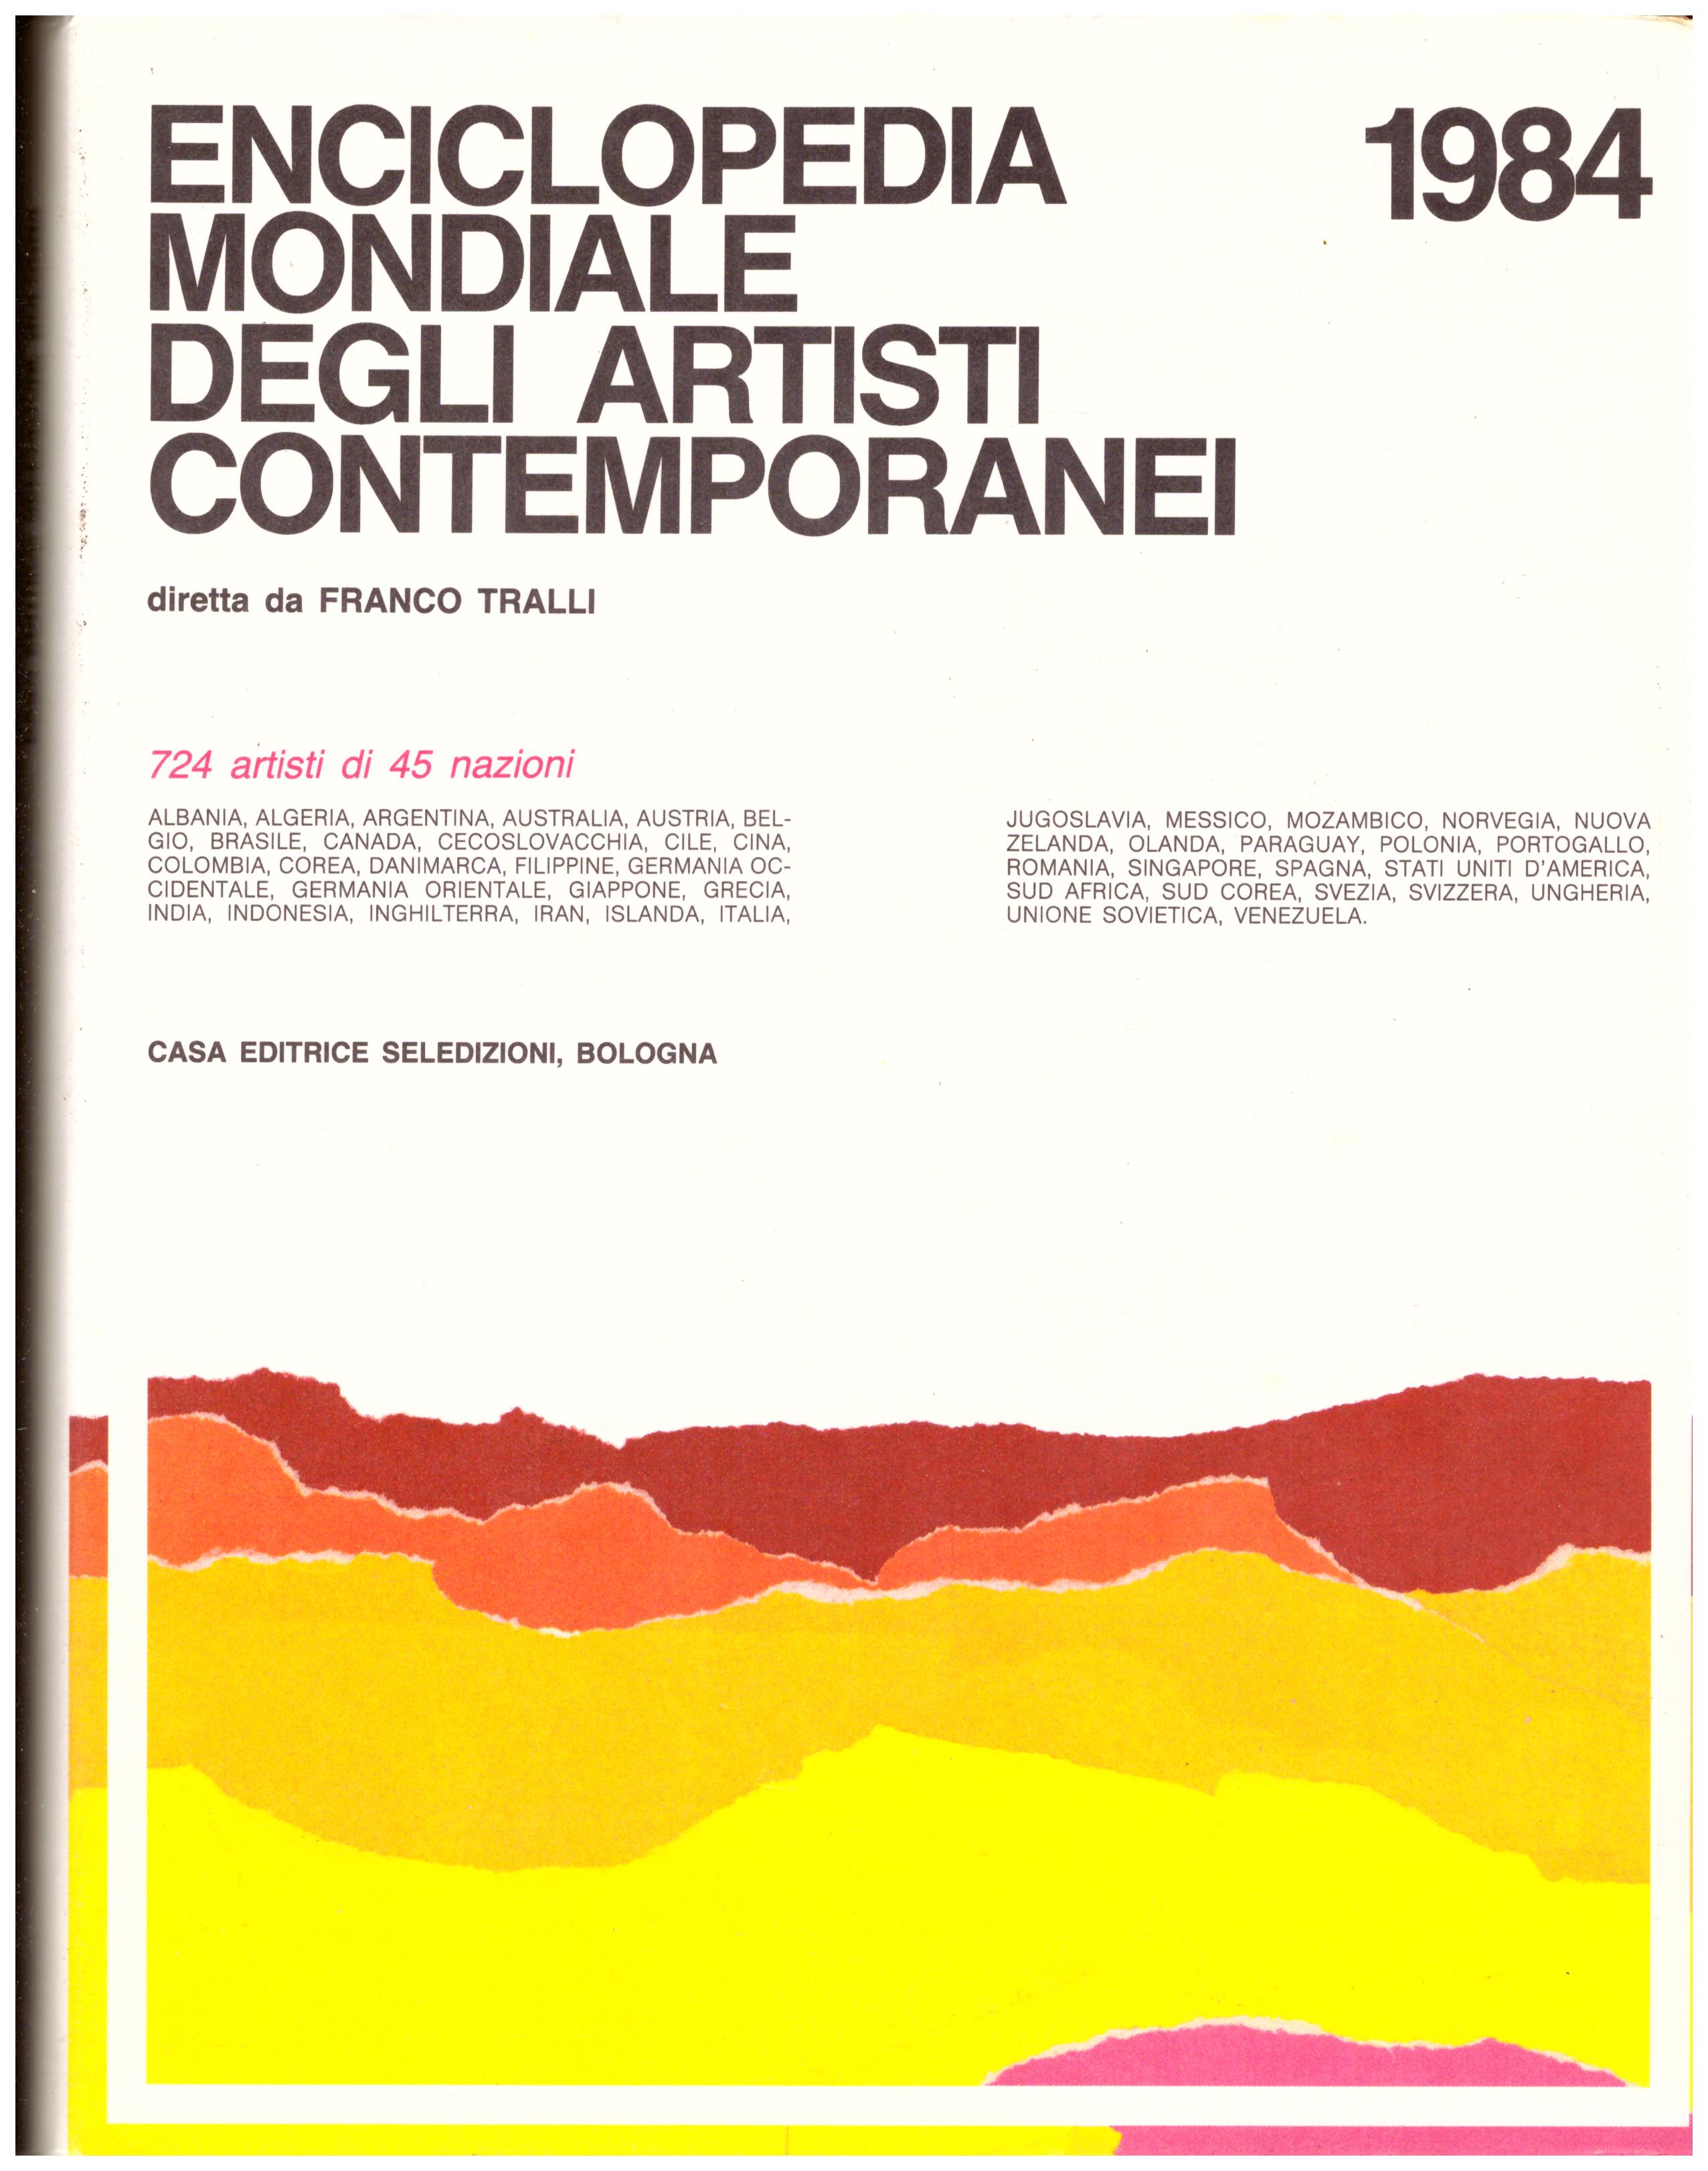 Titolo: Enciclopedia mondiale degli artisti contemporanei 1984  autore: Franco Tralli  editore: seledizioni